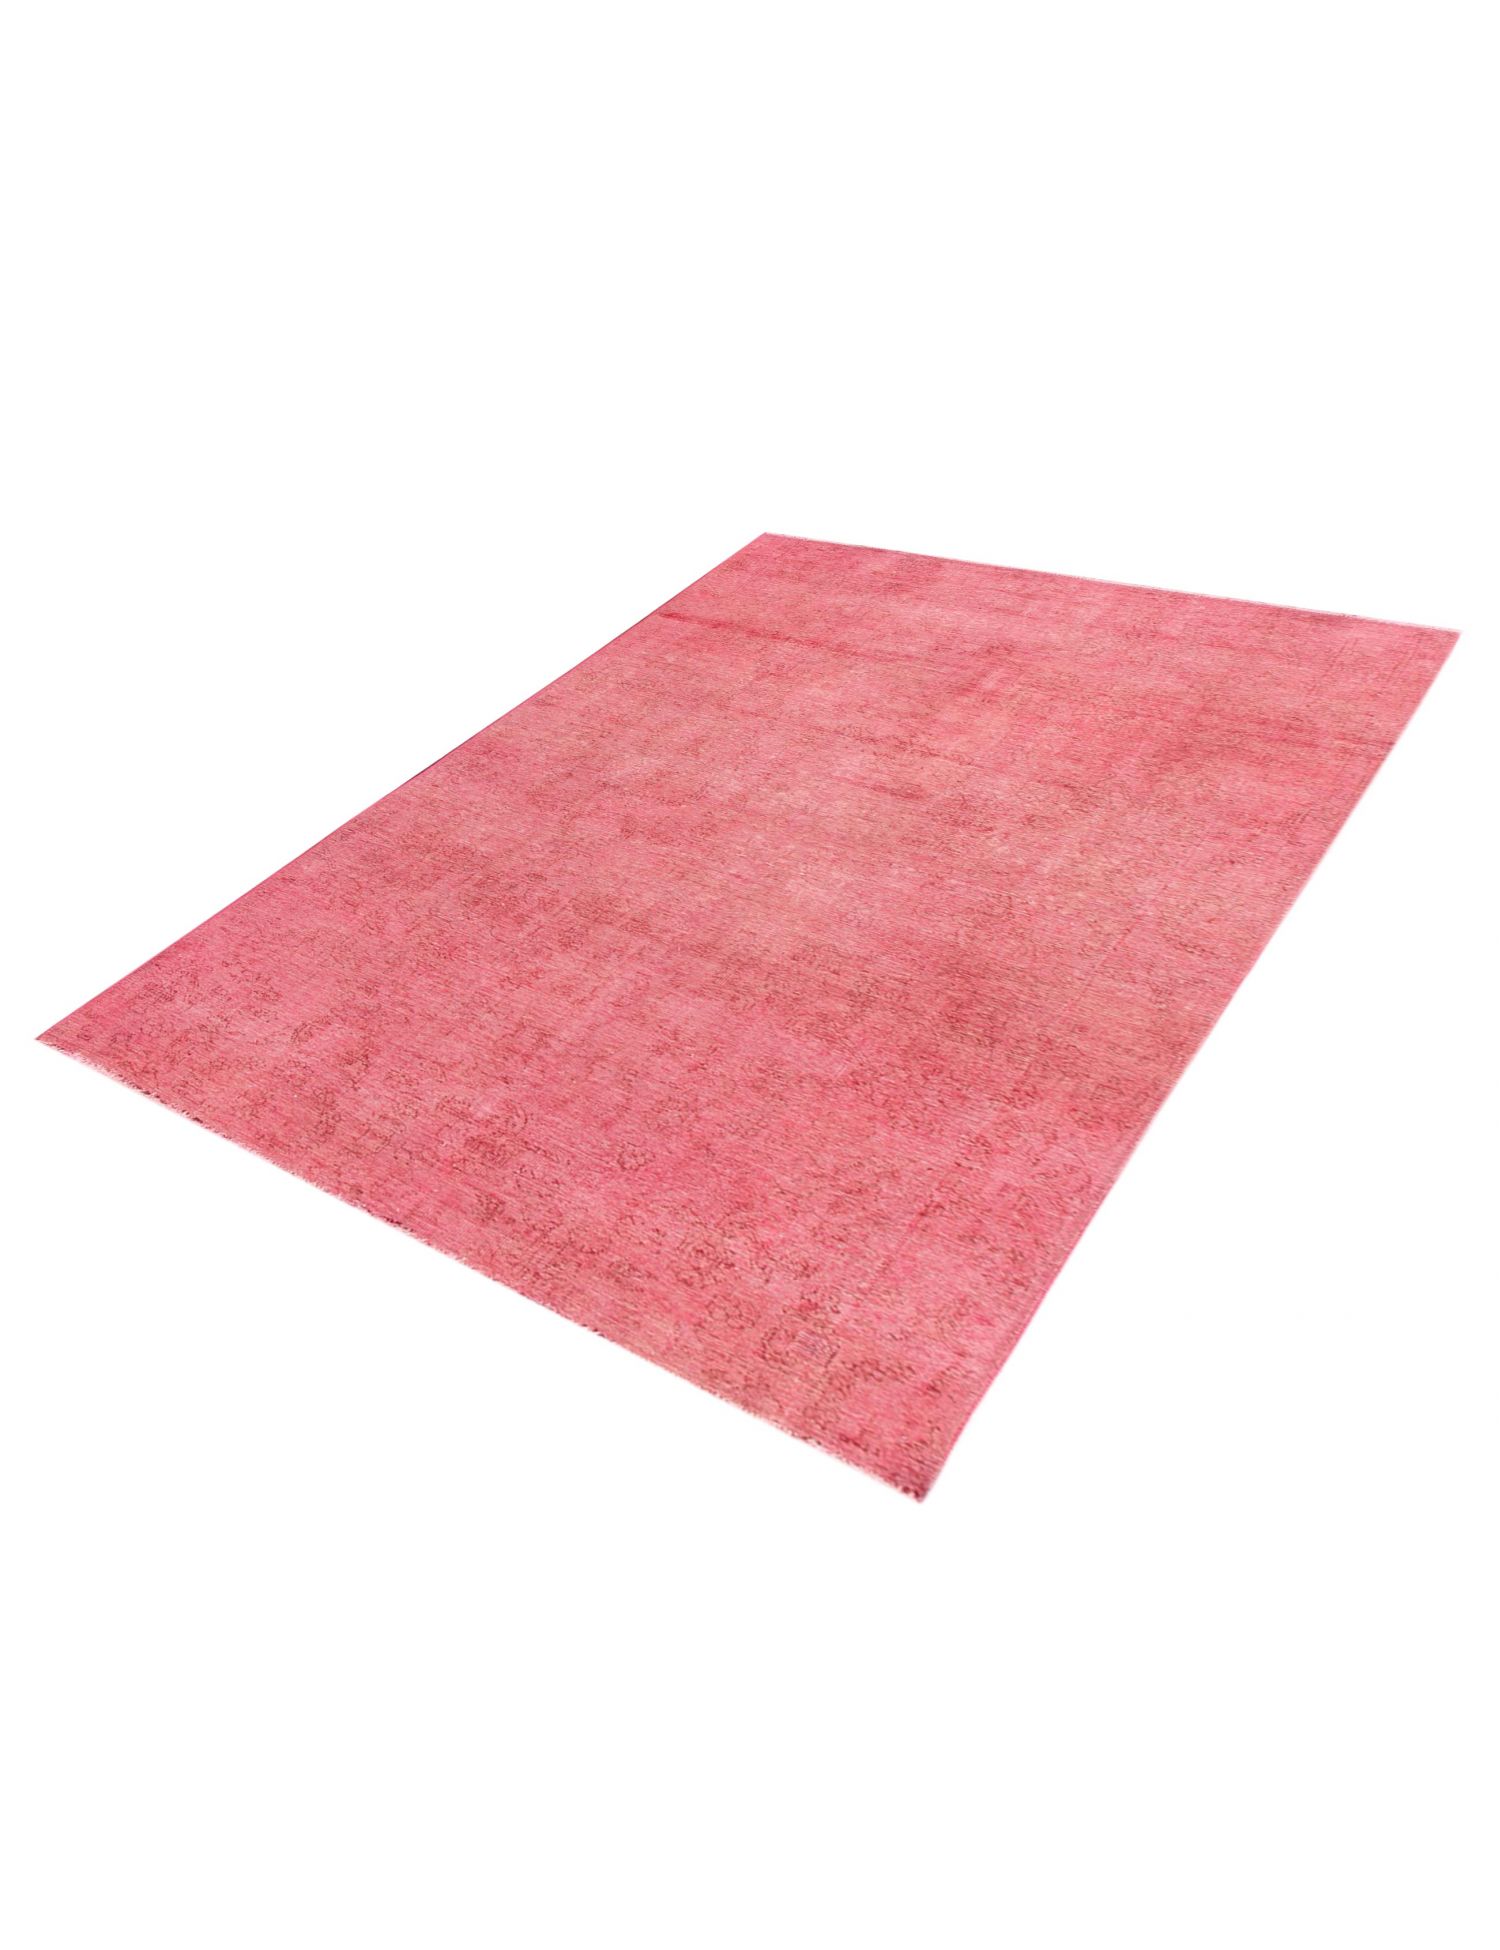 Persischer Vintage Teppich  rosa <br/>303 x 200 cm